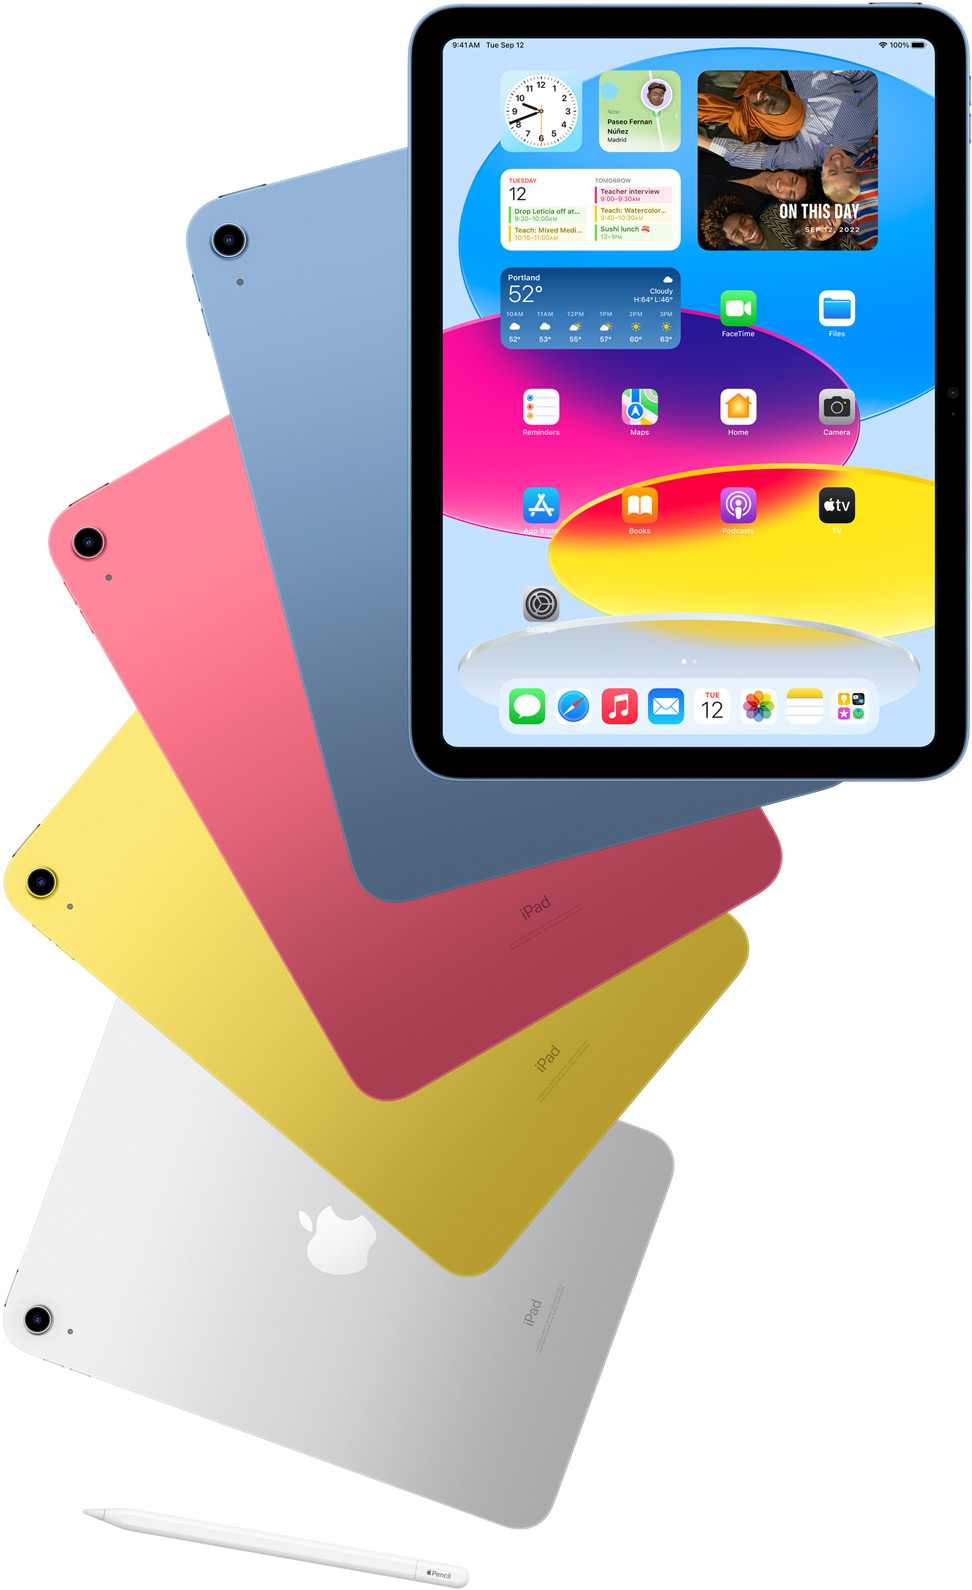 Predná strana iPadu s domovskou obrazovkou a zadné strany iPadov v modrej, ružovej, žltej a striebornej farbe. Vedľa rozložených modelov iPadu je položená ceruzka Apple Pencil.